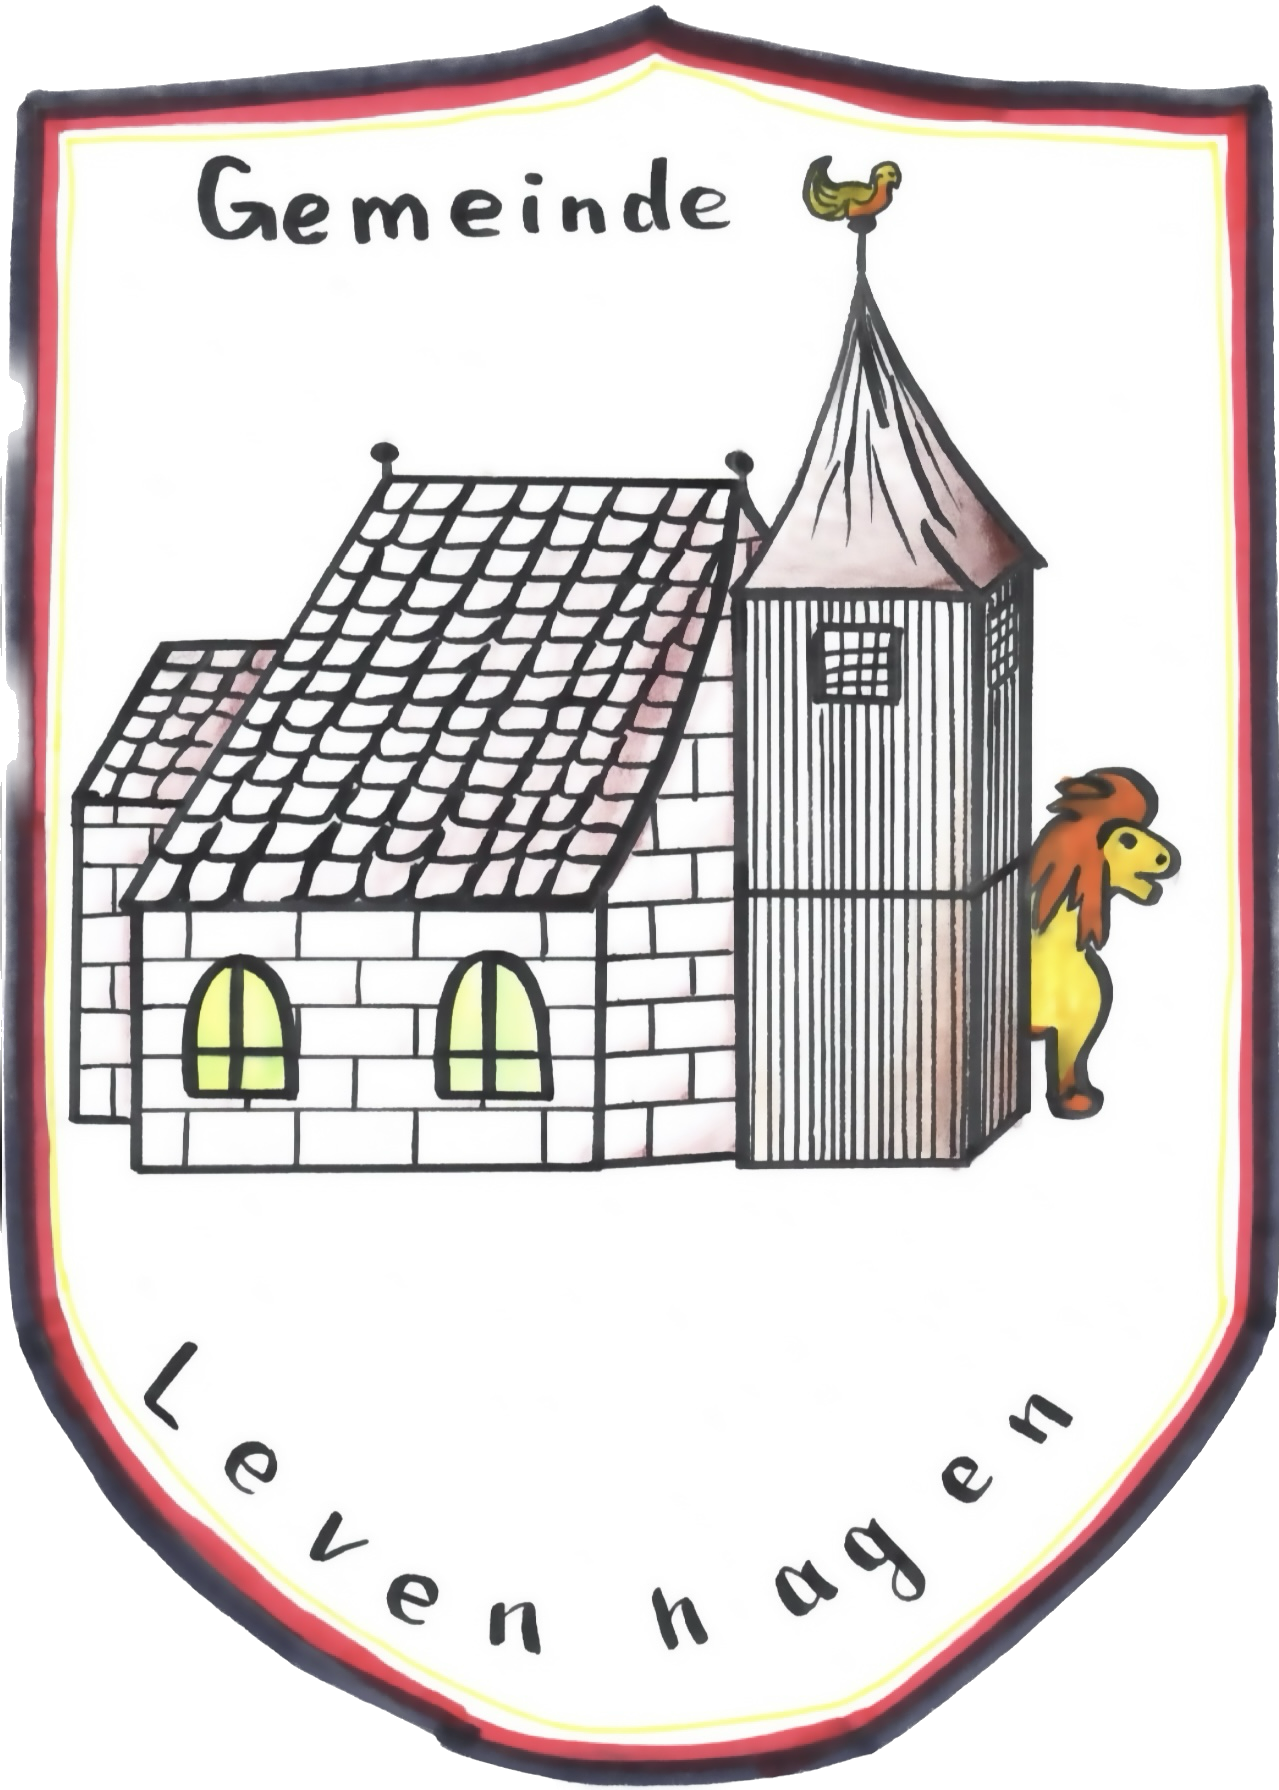 Gemeinde Levenhagen